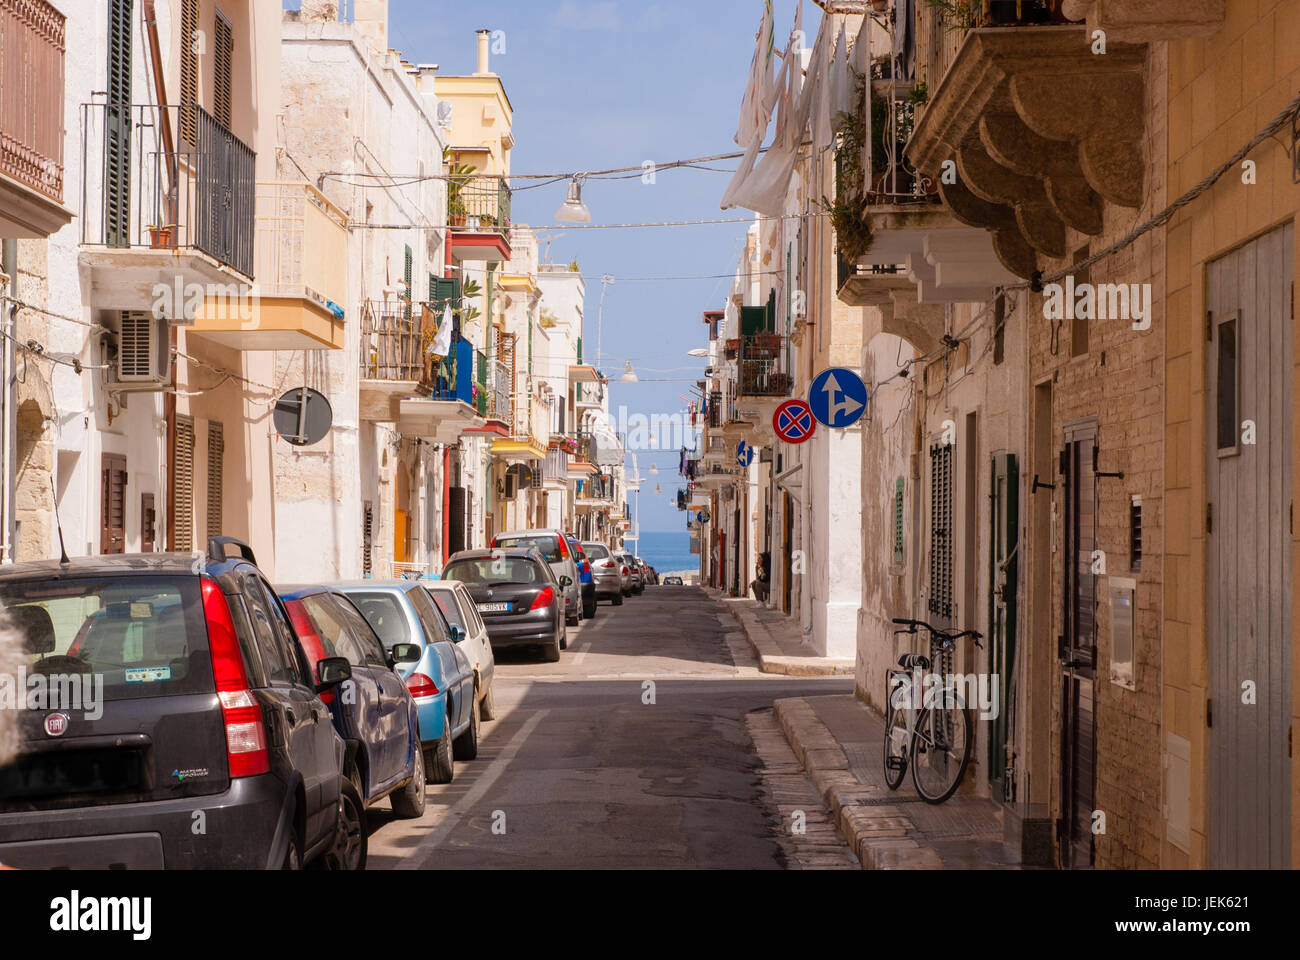 Streets in Polignano a Mare, Apulia, Italy Stock Photo